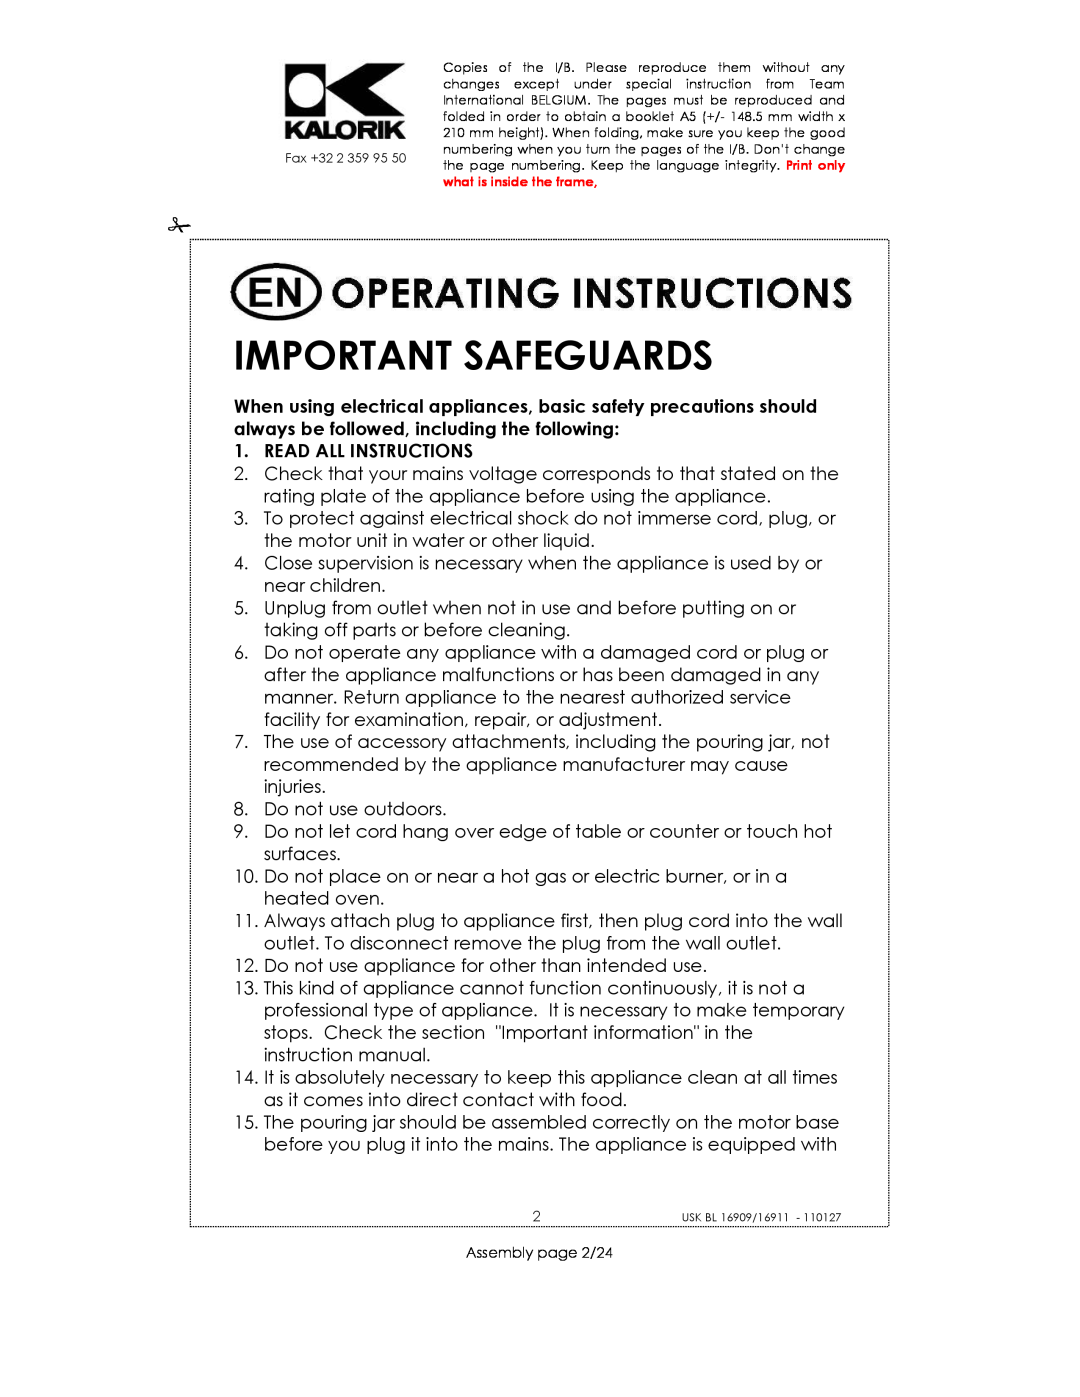 Kalorik USK BL 33029, usk bl 16909, USK BL 16911 manual Important Safeguards, Read All Instructions 